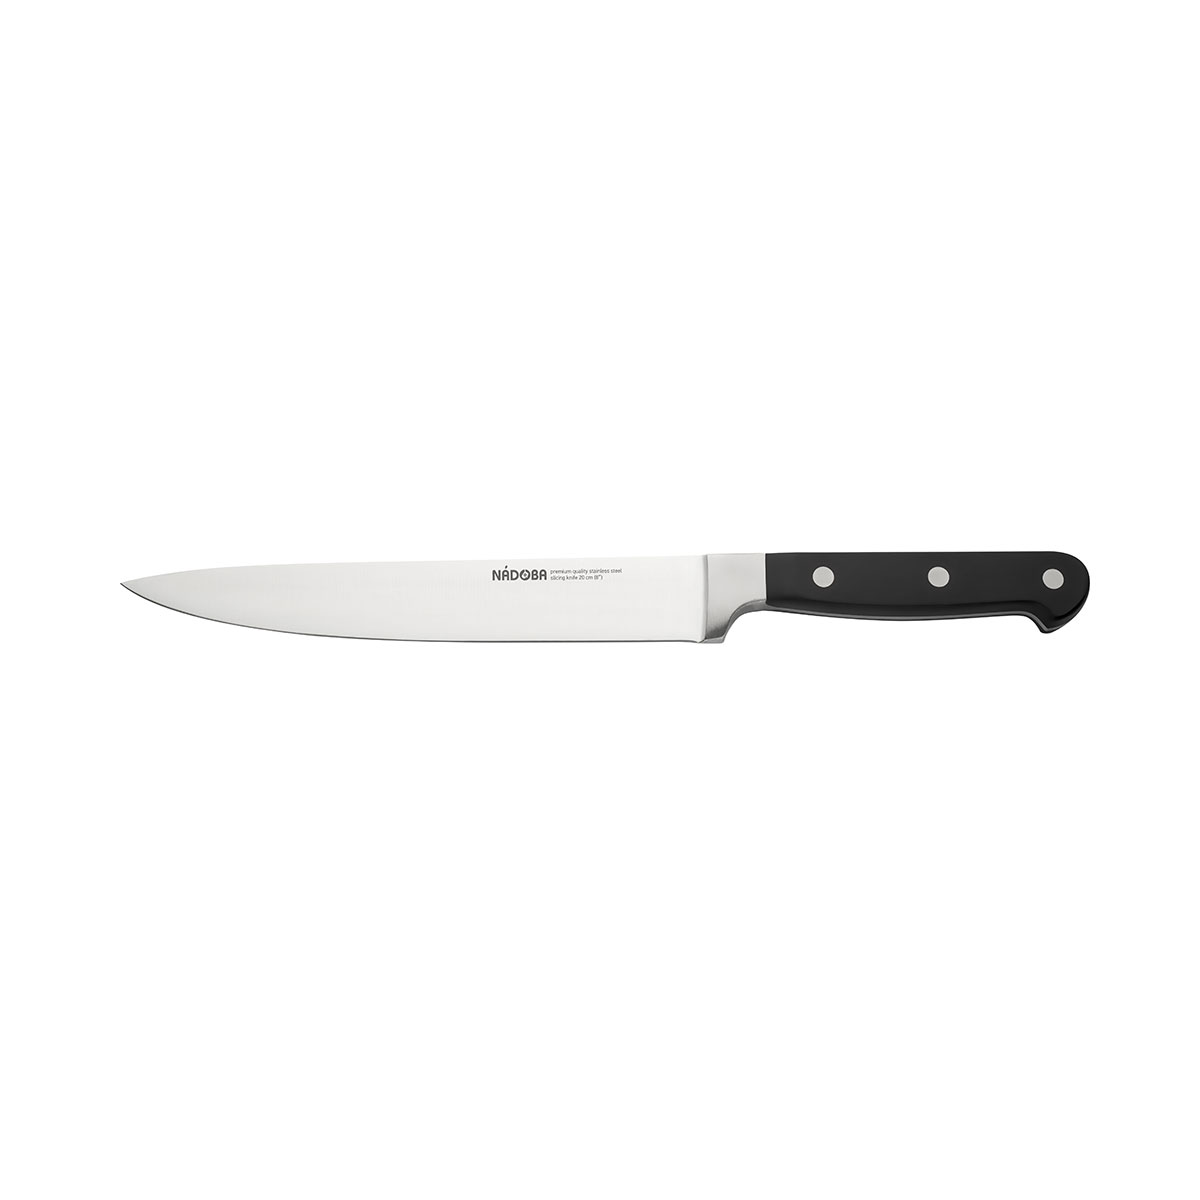 Нож Nadoba разделочный 724212, 20 см разделочный нож nadoba